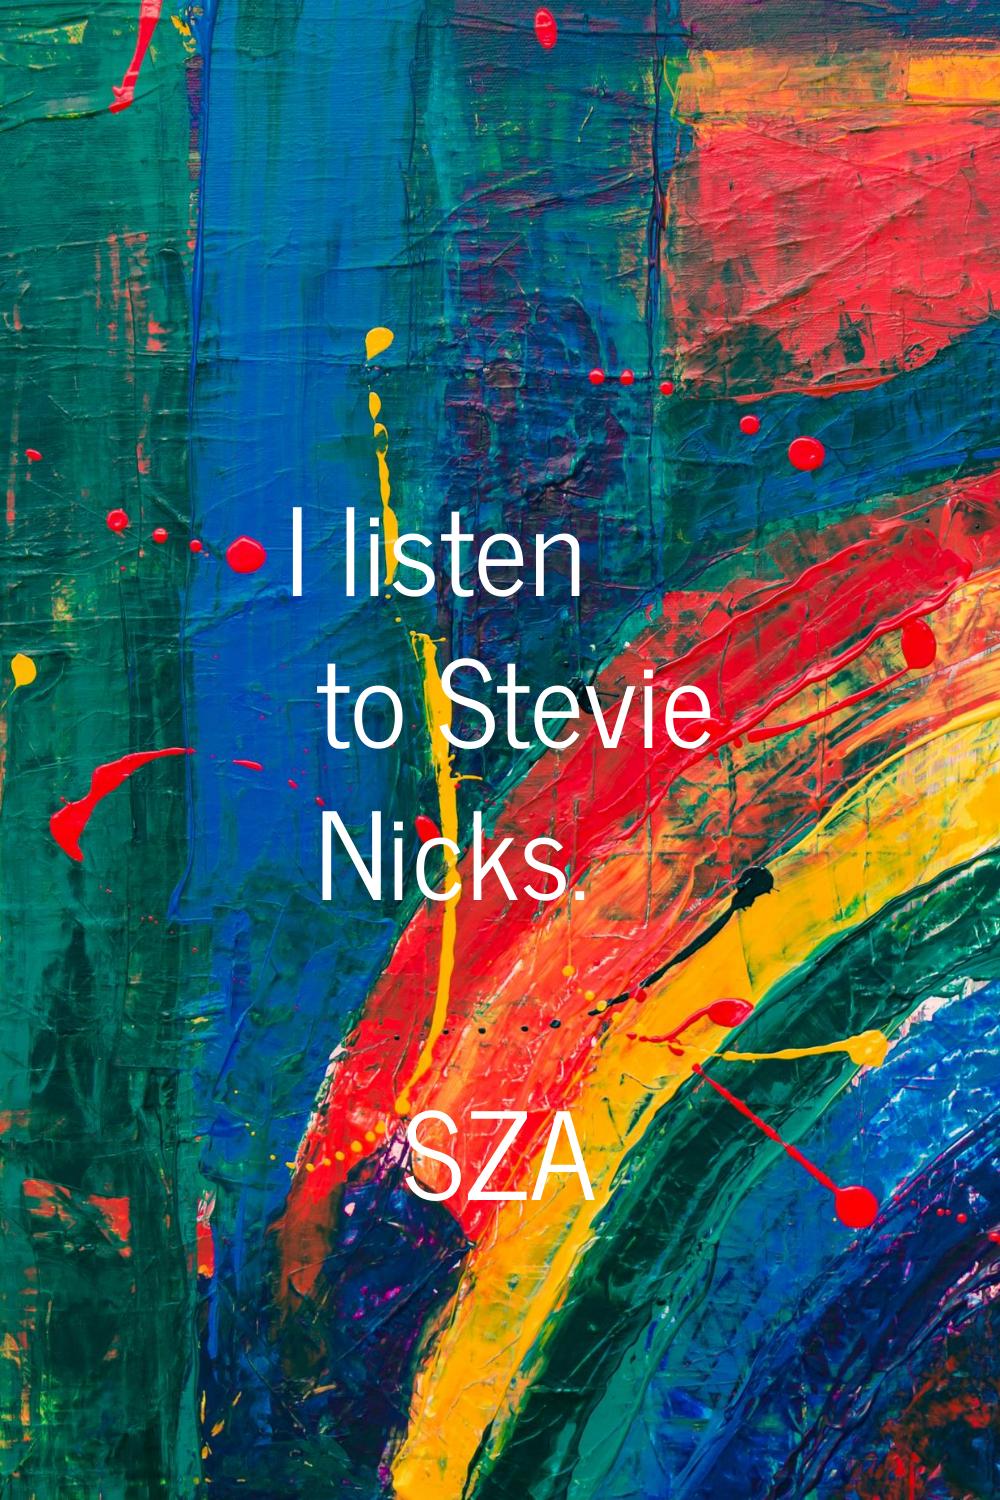 I listen to Stevie Nicks.